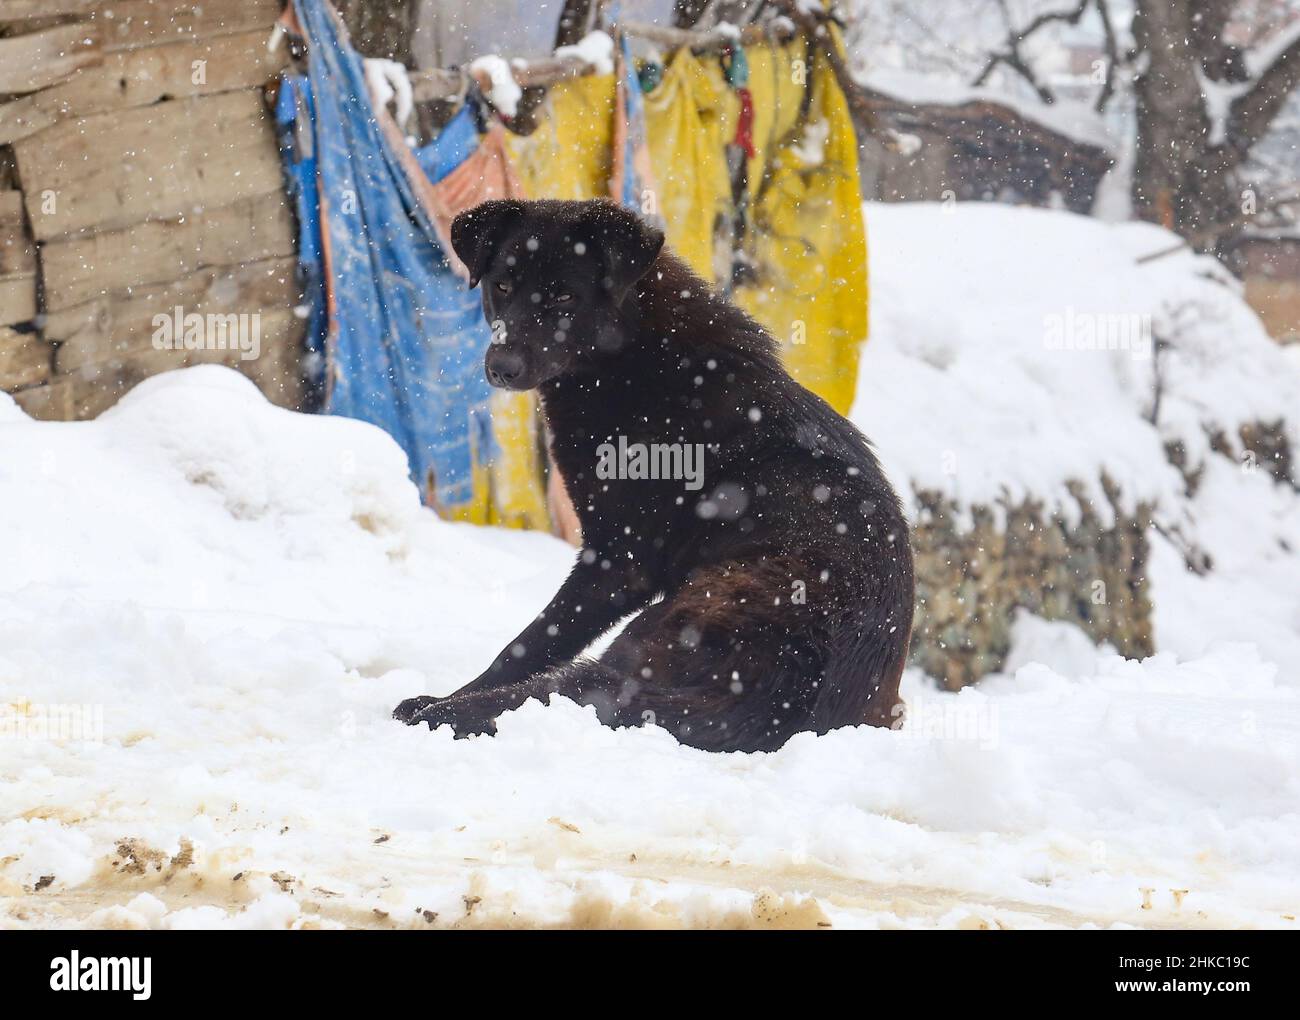 Febbraio 3, 2022, Srinagar, Jammu e Kashmir, India: Un cane randagio visto durante le pesanti nevicate in un villaggio nel distretto settentrionale di Baramulla del Kashmir, circa 35 chilometri a nord di Srinagar, la capitale estiva del Kashmir indiano, (Credit Image: © Sajad Hameed/Pacific Press via ZUMA Press Wire) Foto Stock